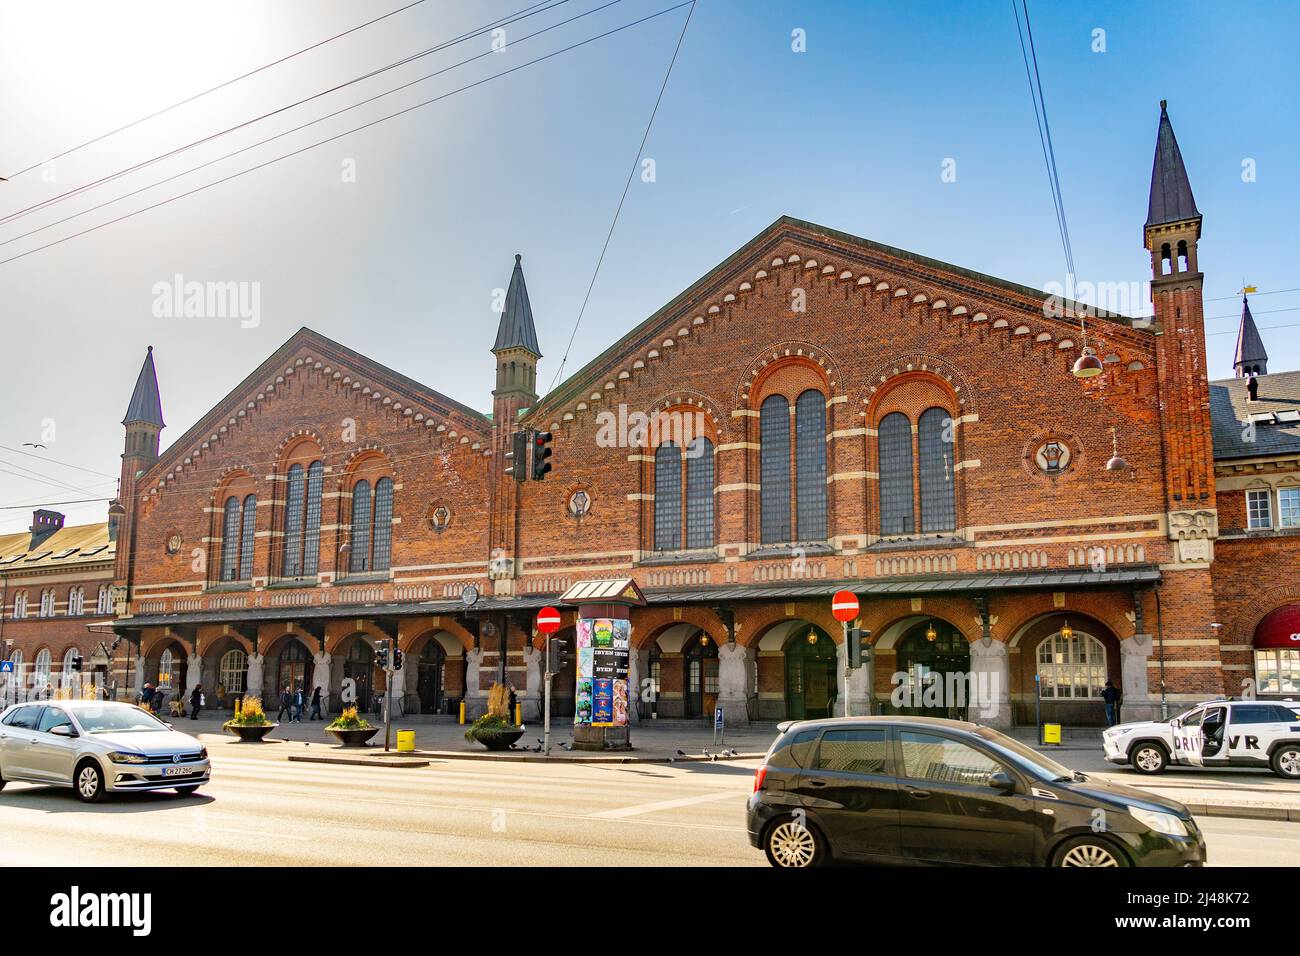 La gare centrale de Copenhague est la principale gare ferroviaire de Copenhague. Copenhague, Danemark, Europe Banque D'Images